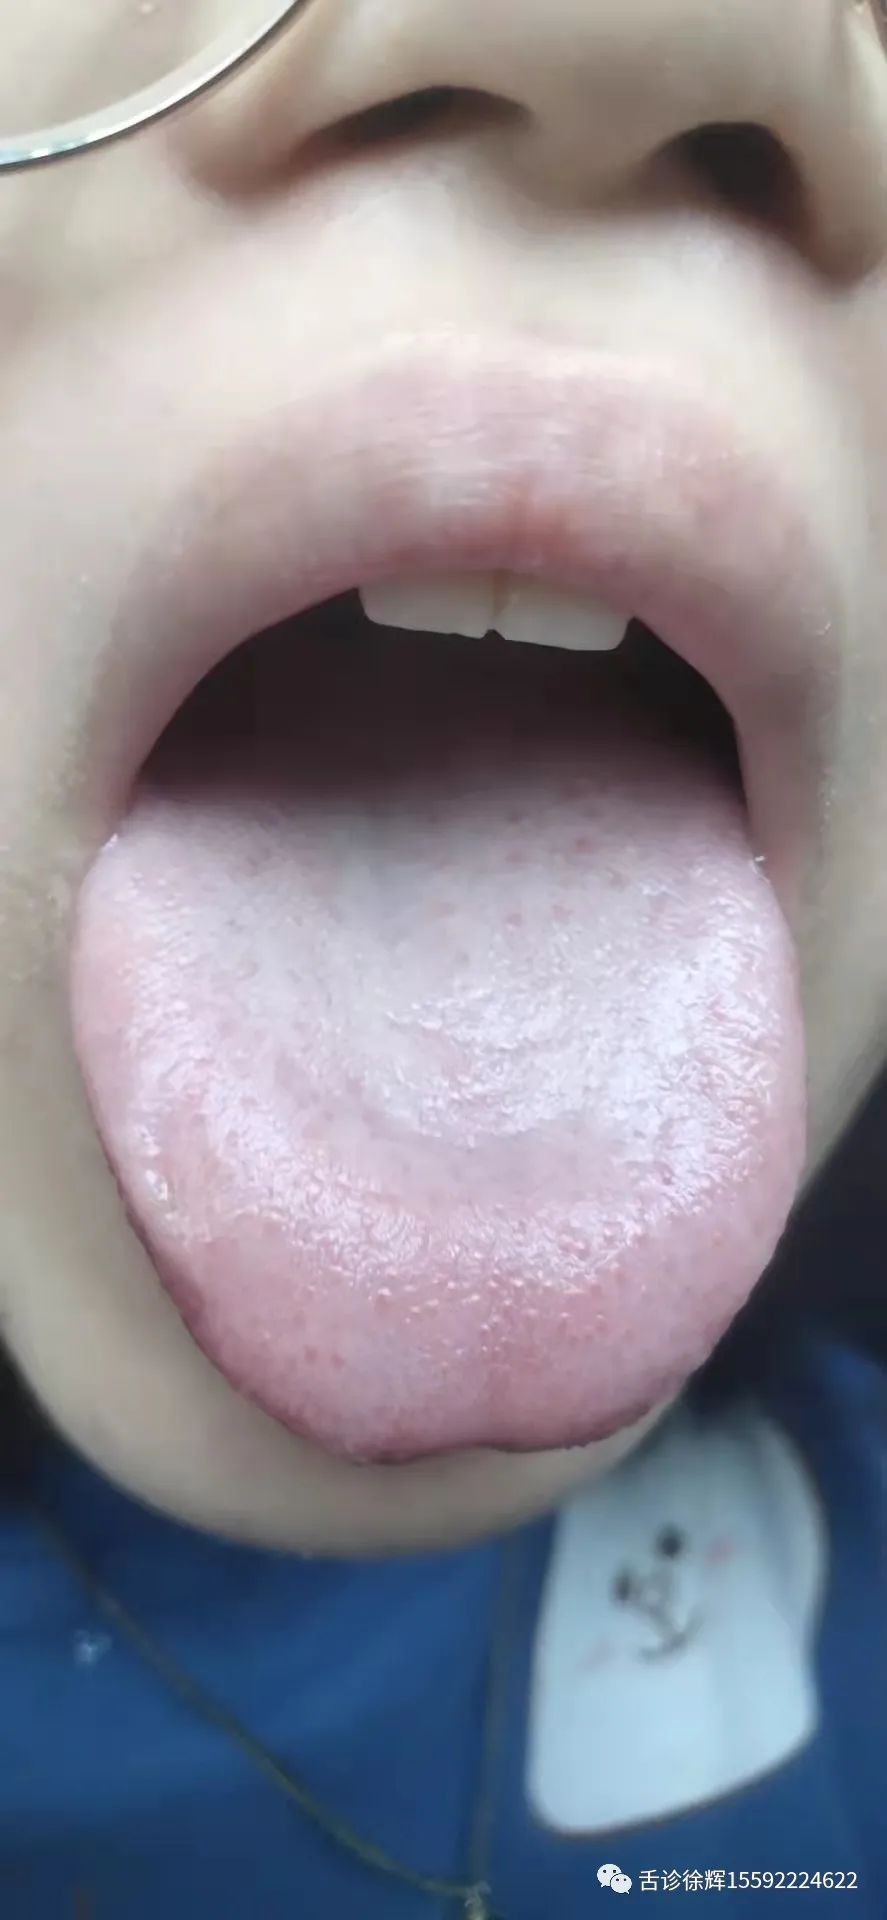 舌像分析：大便干燥，痛经